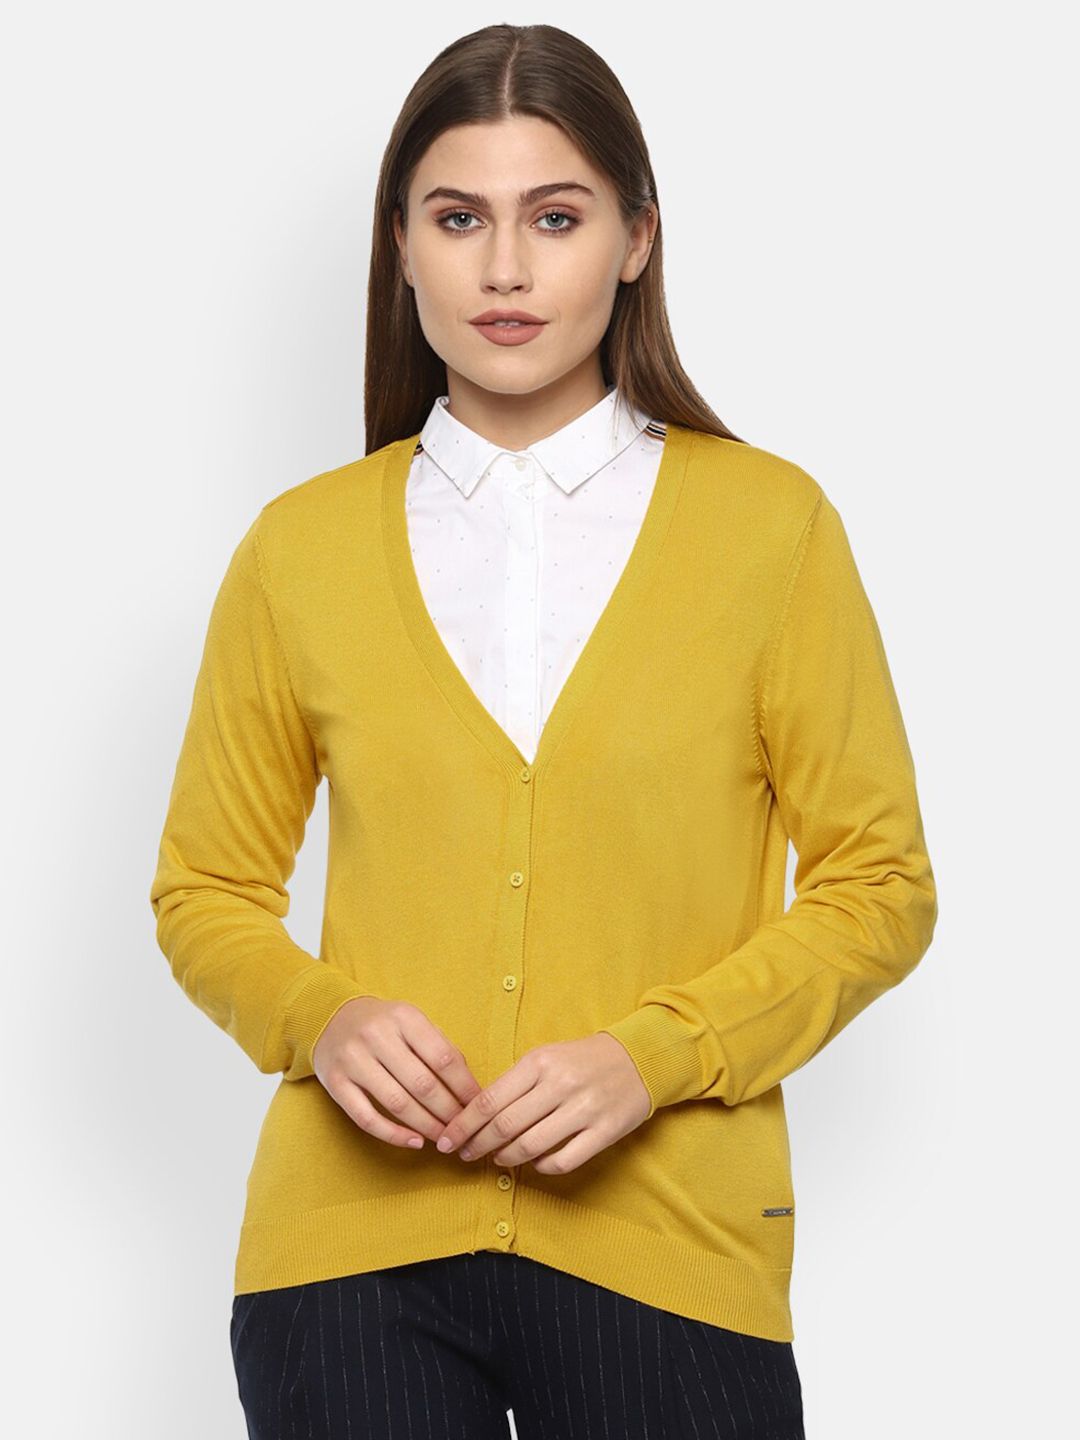 Van Heusen Woman Women Yellow Cardigan Price in India